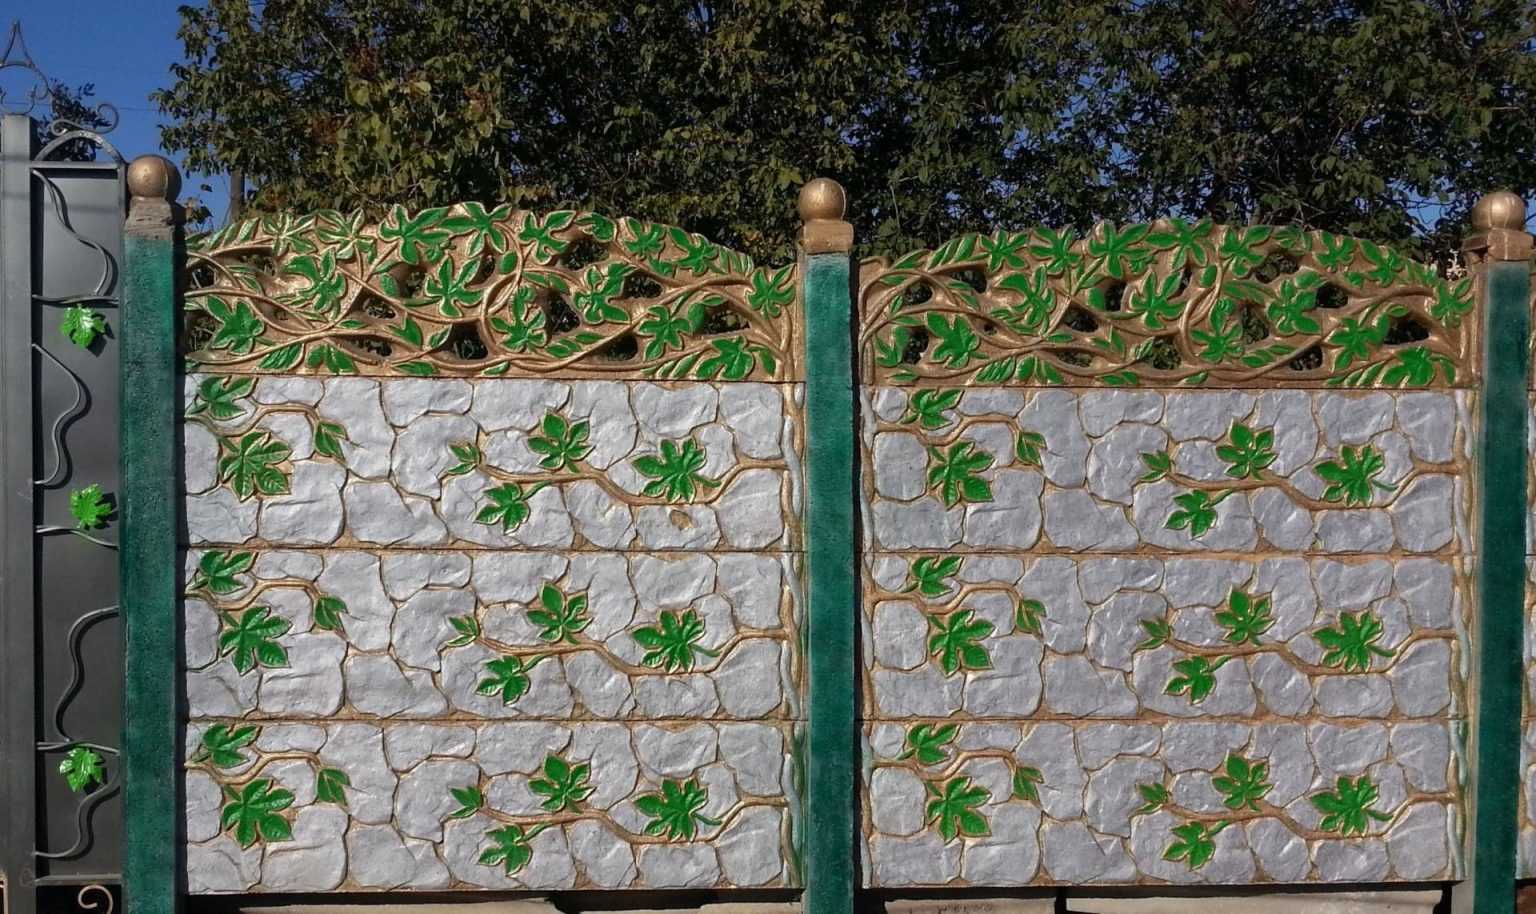 Бетонный забор (61 фото): железобетонное ограждение и изделие из бетона, универсальная конструкция из плиты и панелей, краска для ворот